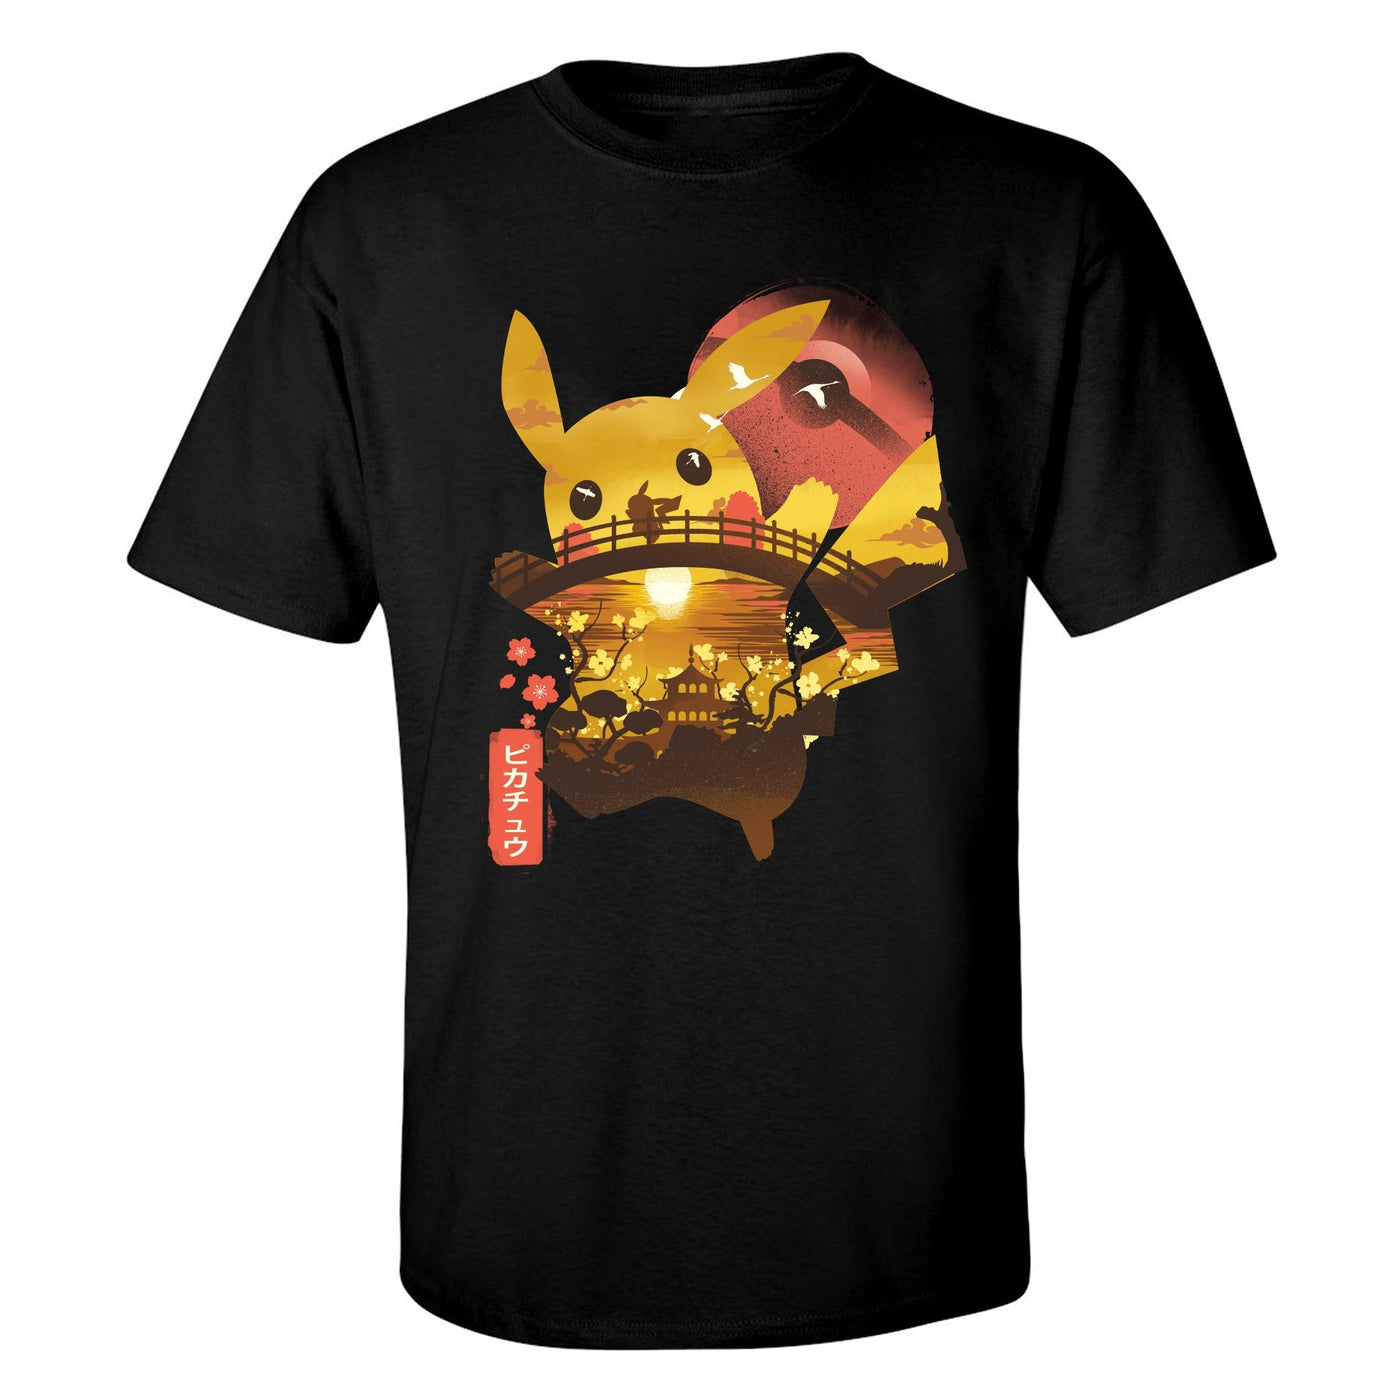 "Ukiyo Pikachu" T-Shirt by Dandingerozz